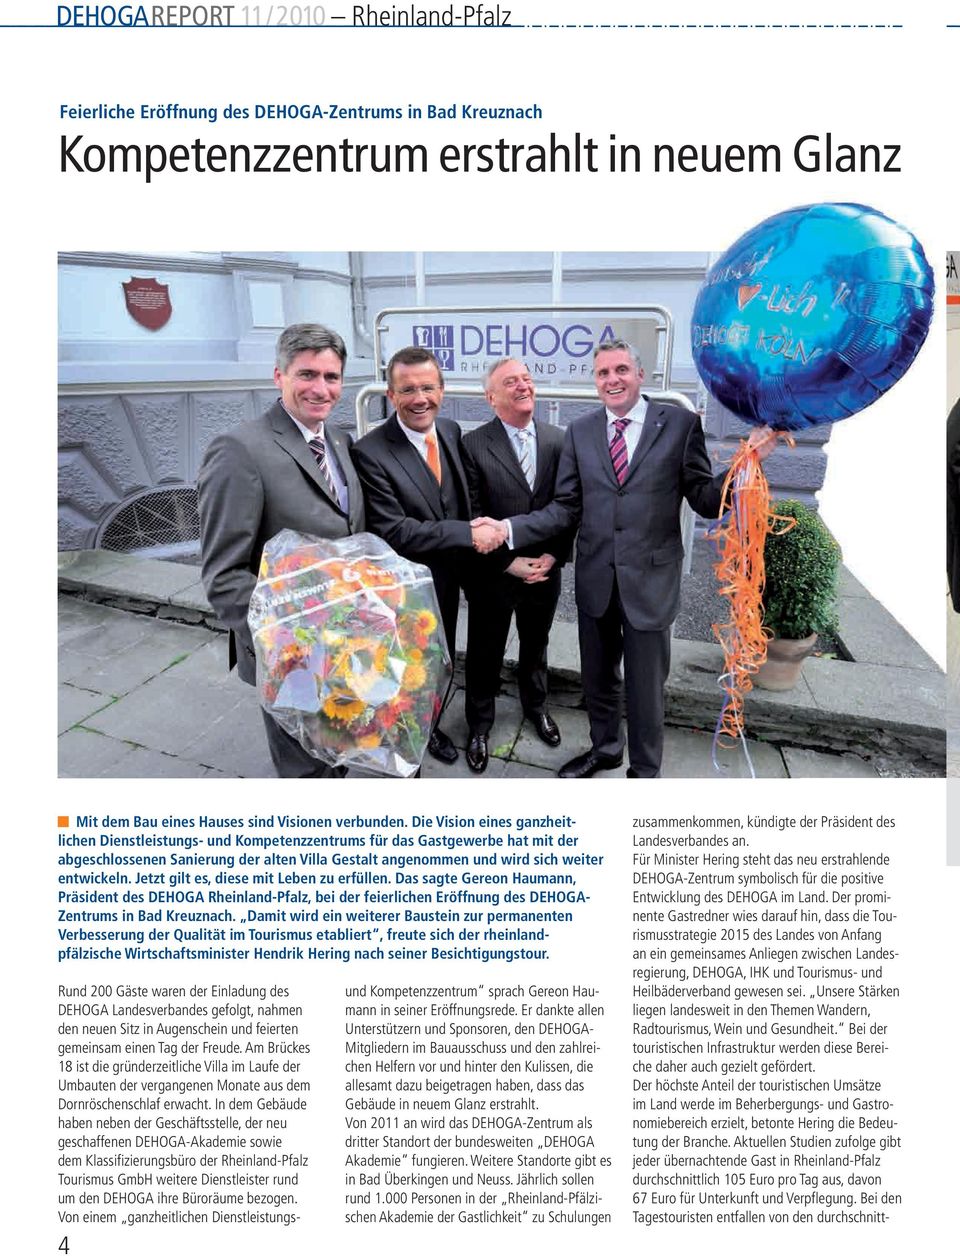 Jetzt gilt es, diese mit Leben zu erfüllen. Das sagte Gereon Haumann, Präsident des DEHOGA Rheinland-Pfalz, bei der feierlichen Eröffnung des DEHOGA- Zentrums in Bad Kreuznach.